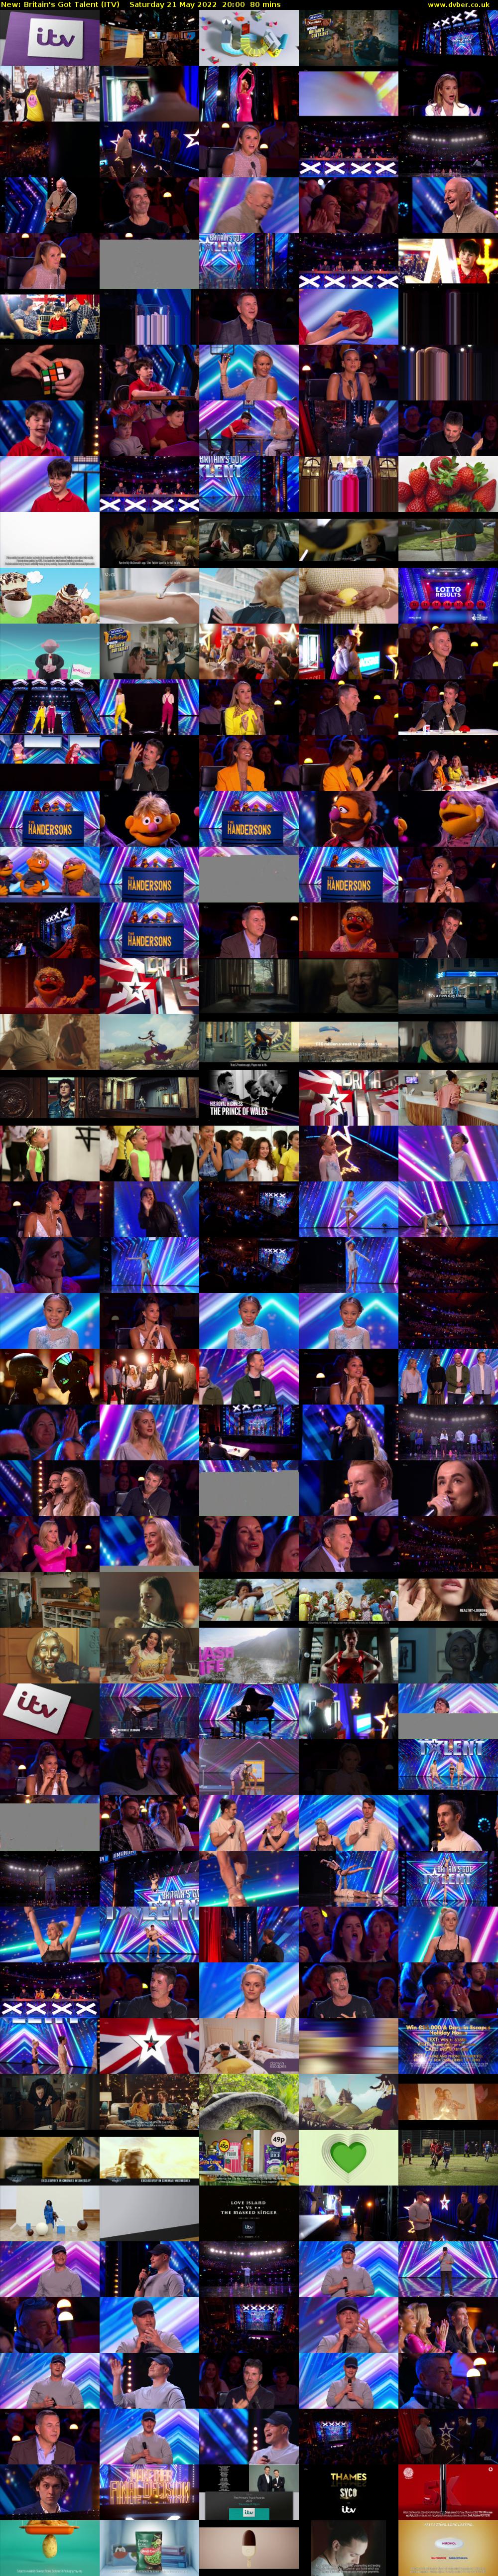 Britain's Got Talent (ITV) Saturday 21 May 2022 20:00 - 21:20